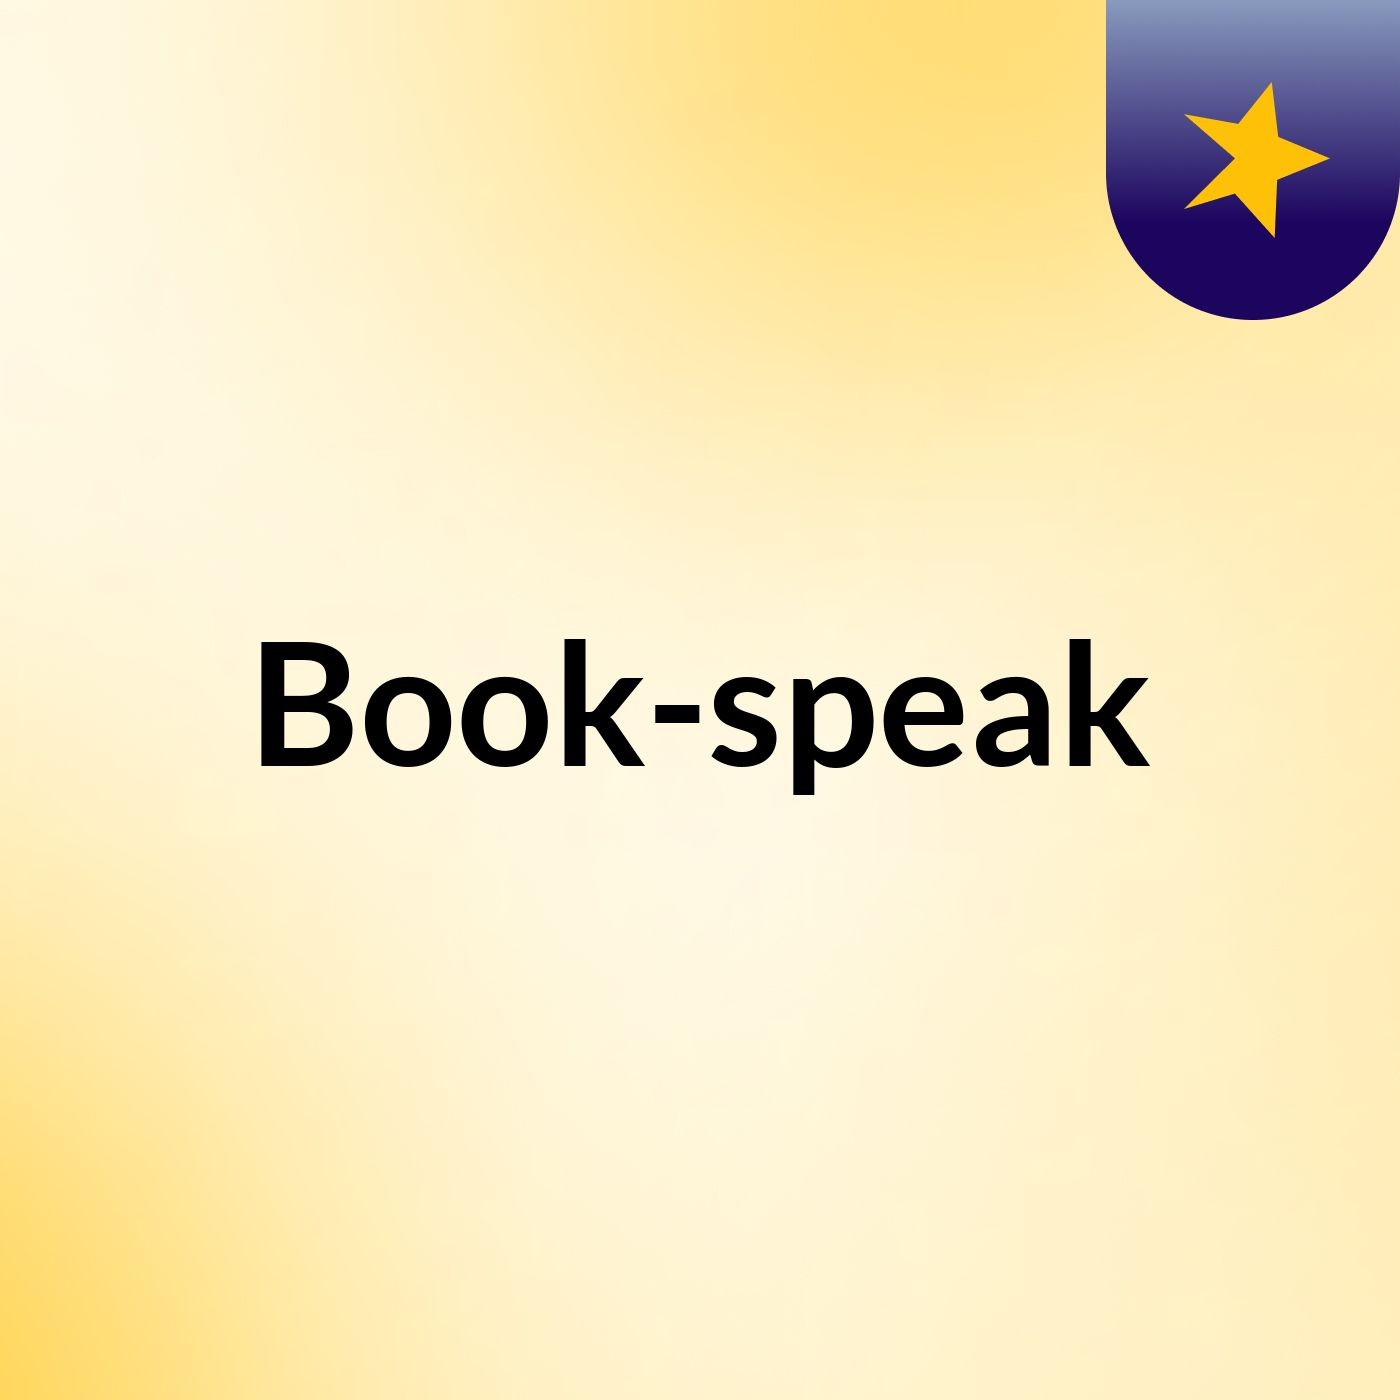 Book-speak